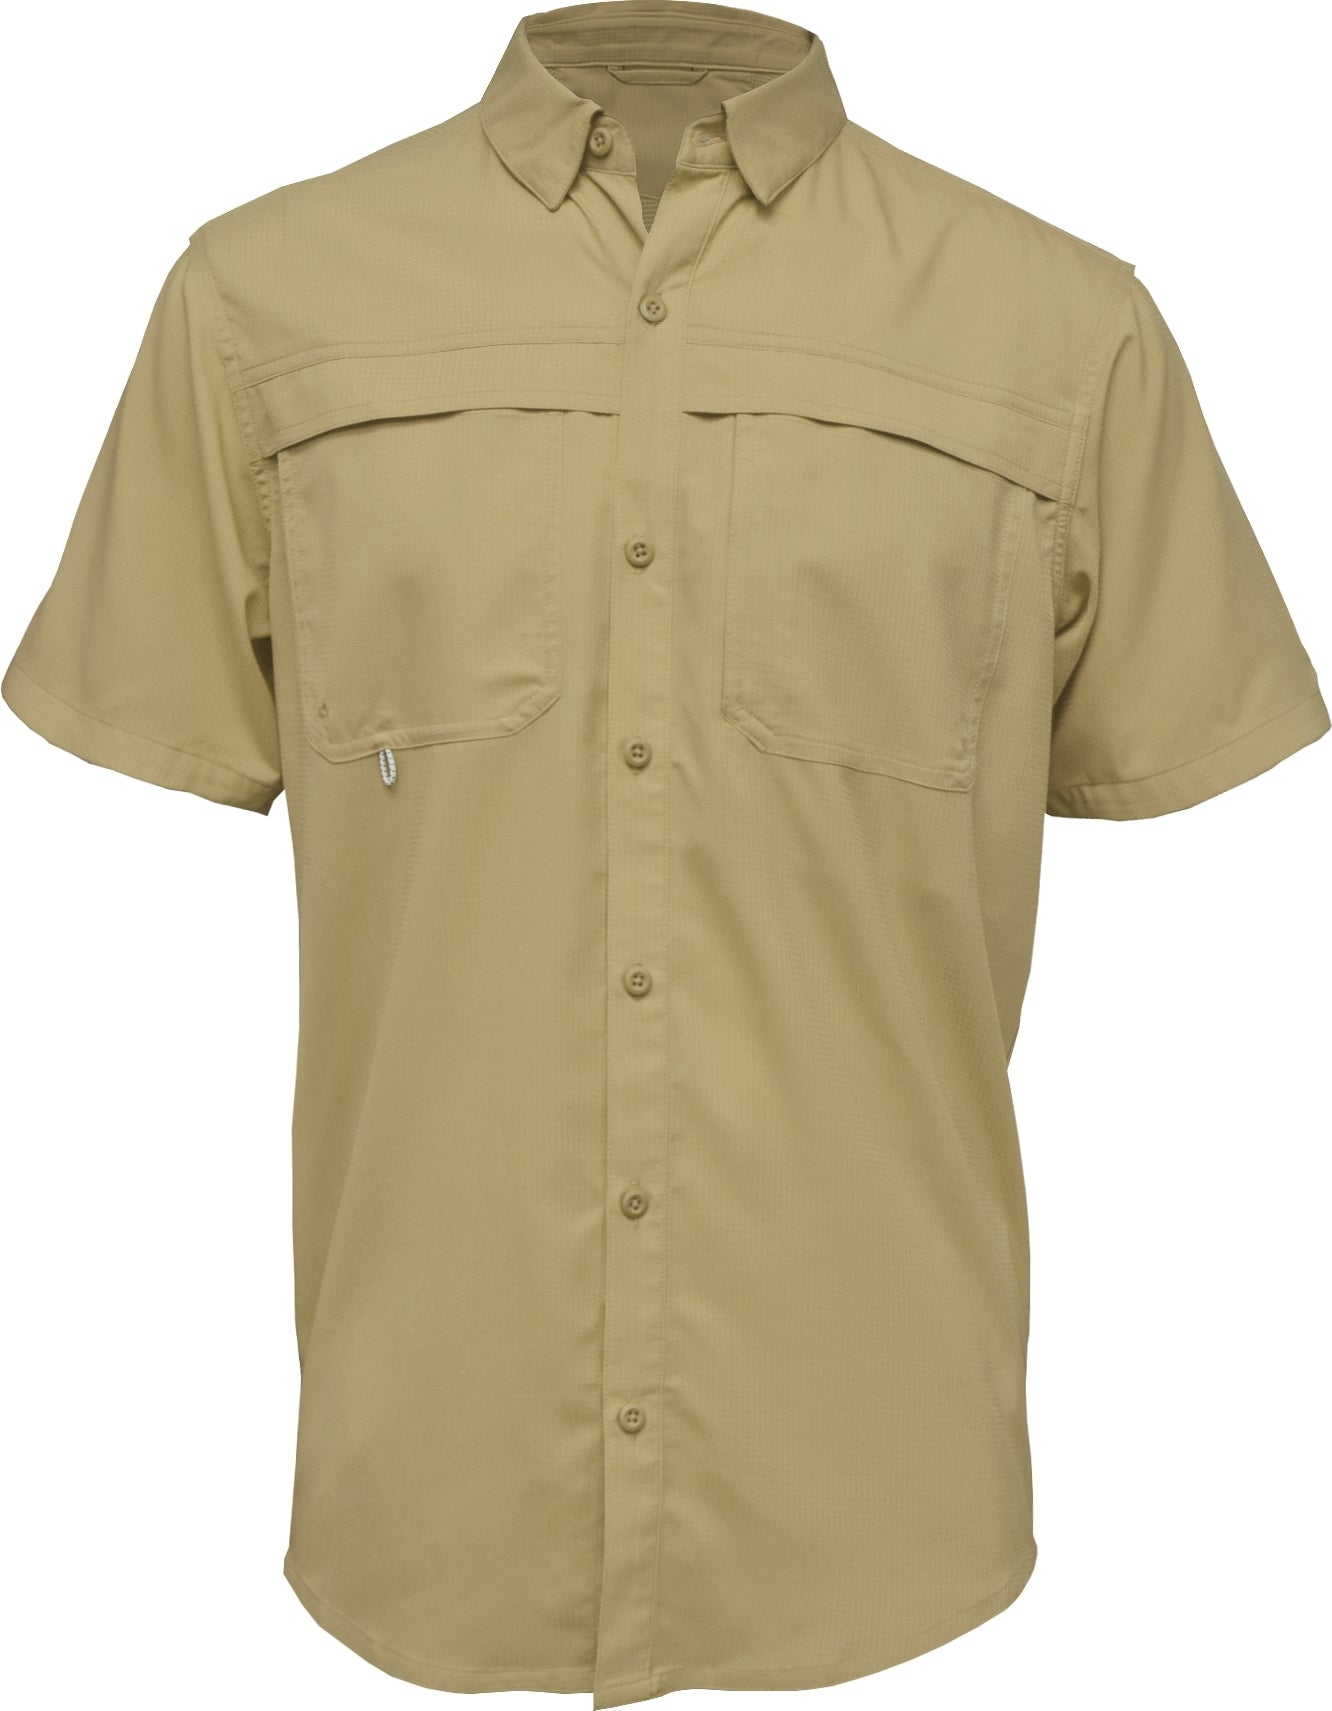 Mojo Sportswear Men's Short Sleeve SoWal TFS, Size: 3XL, Yellow